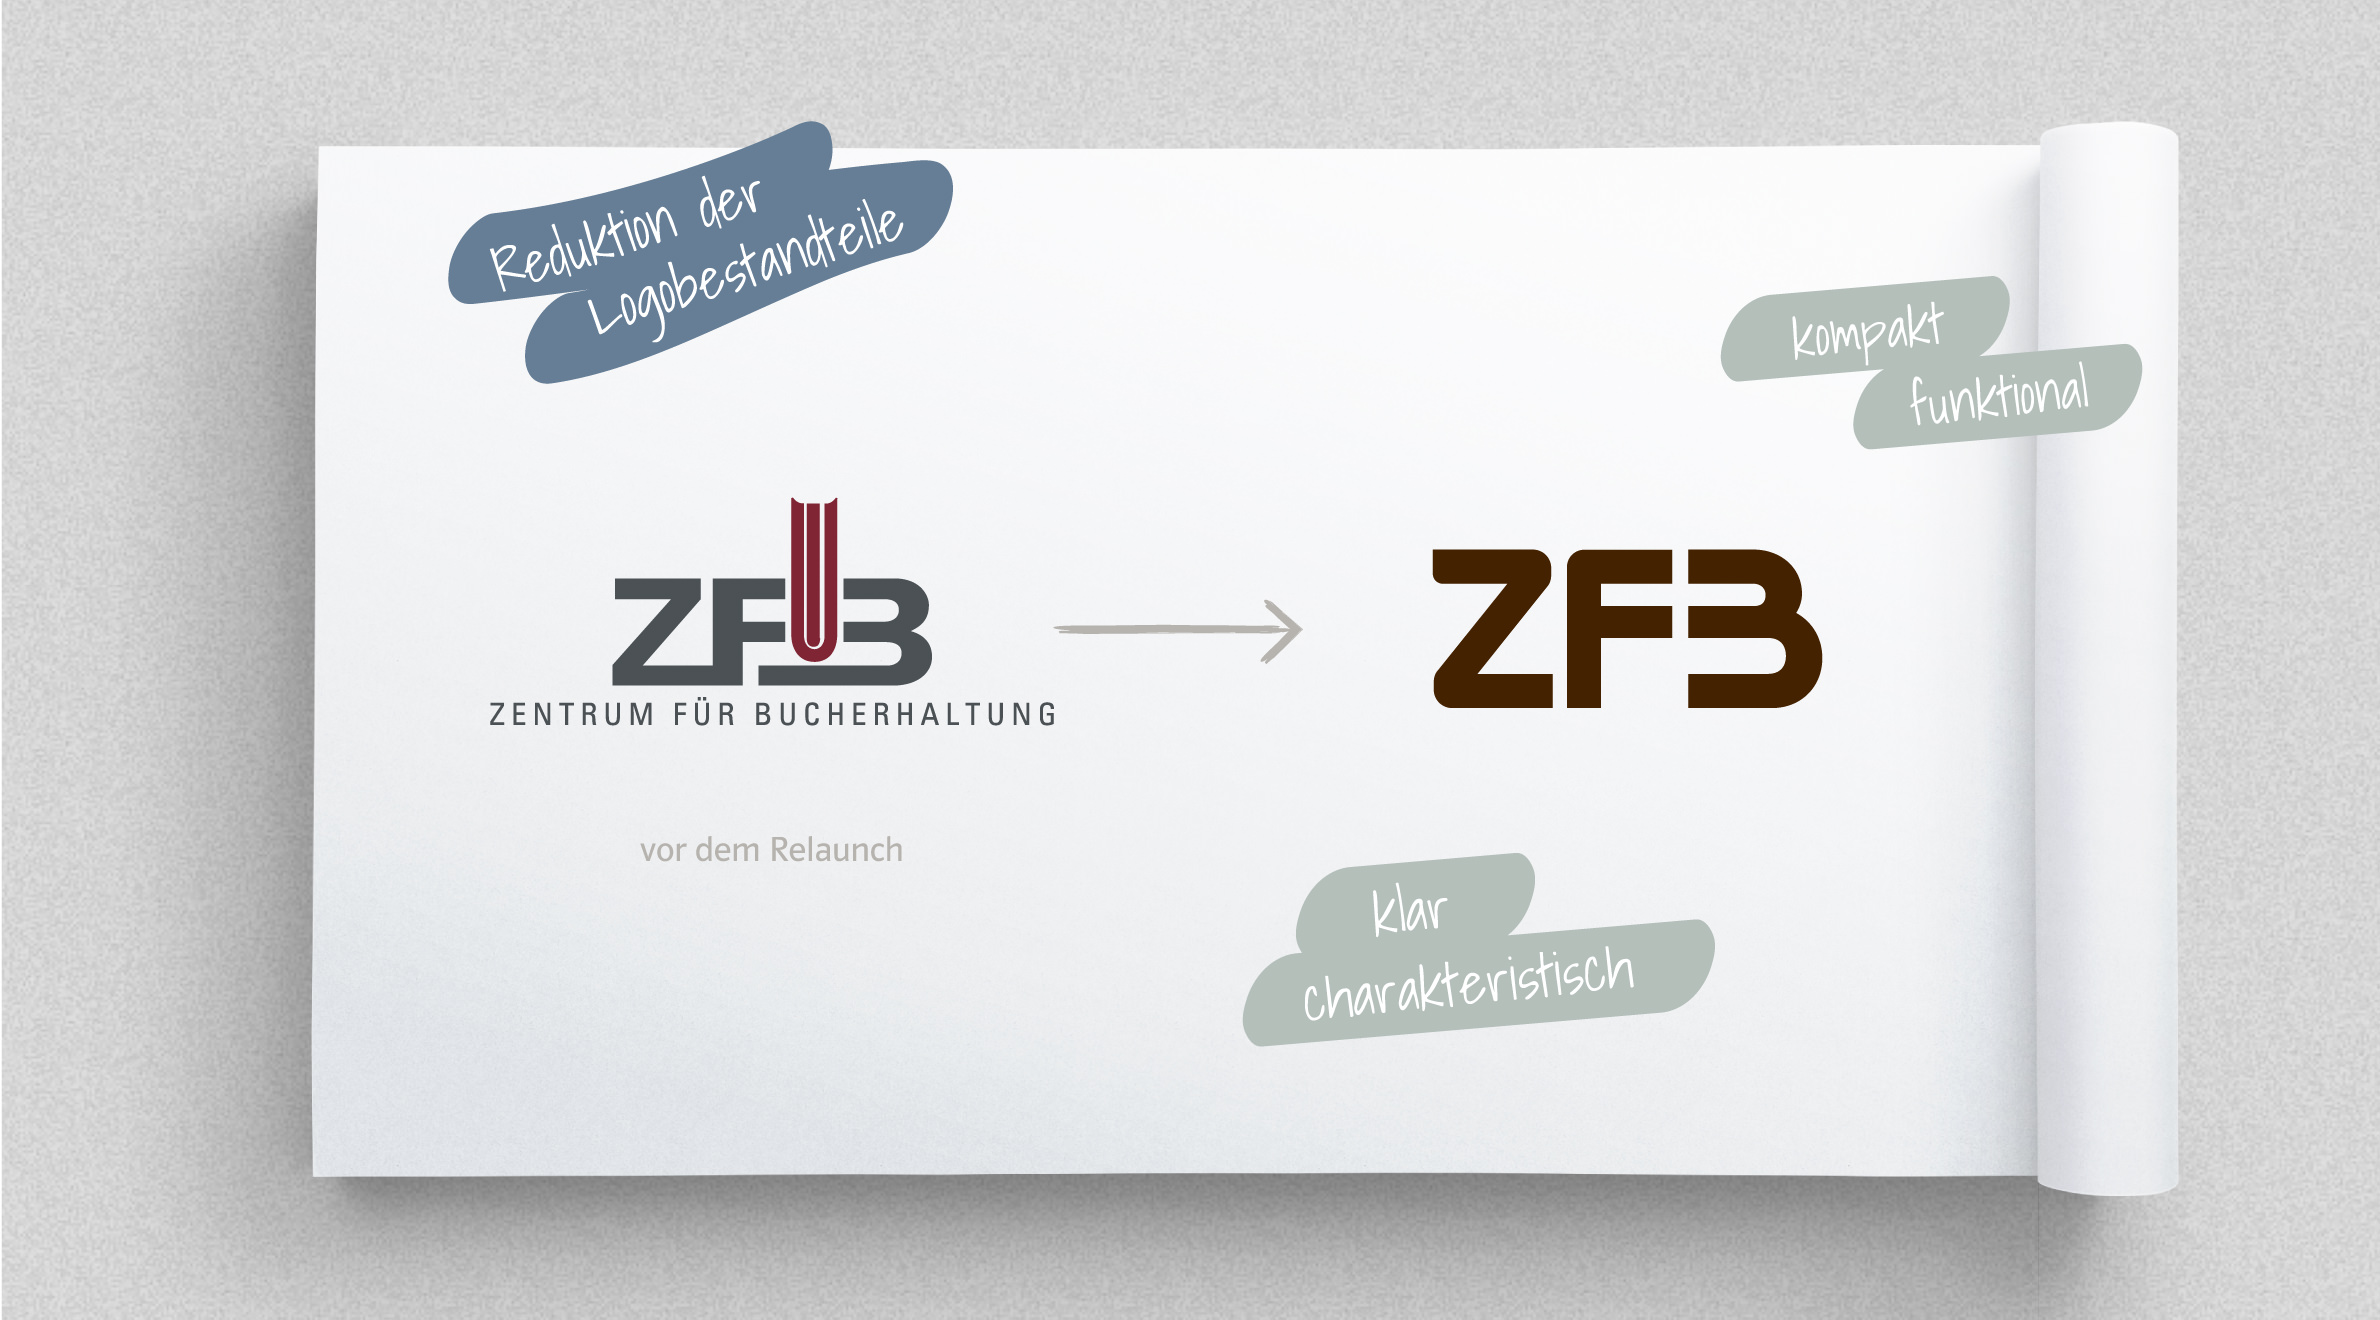 Zentrum für Bucherhaltung - ZFB, Logo - Relaunch